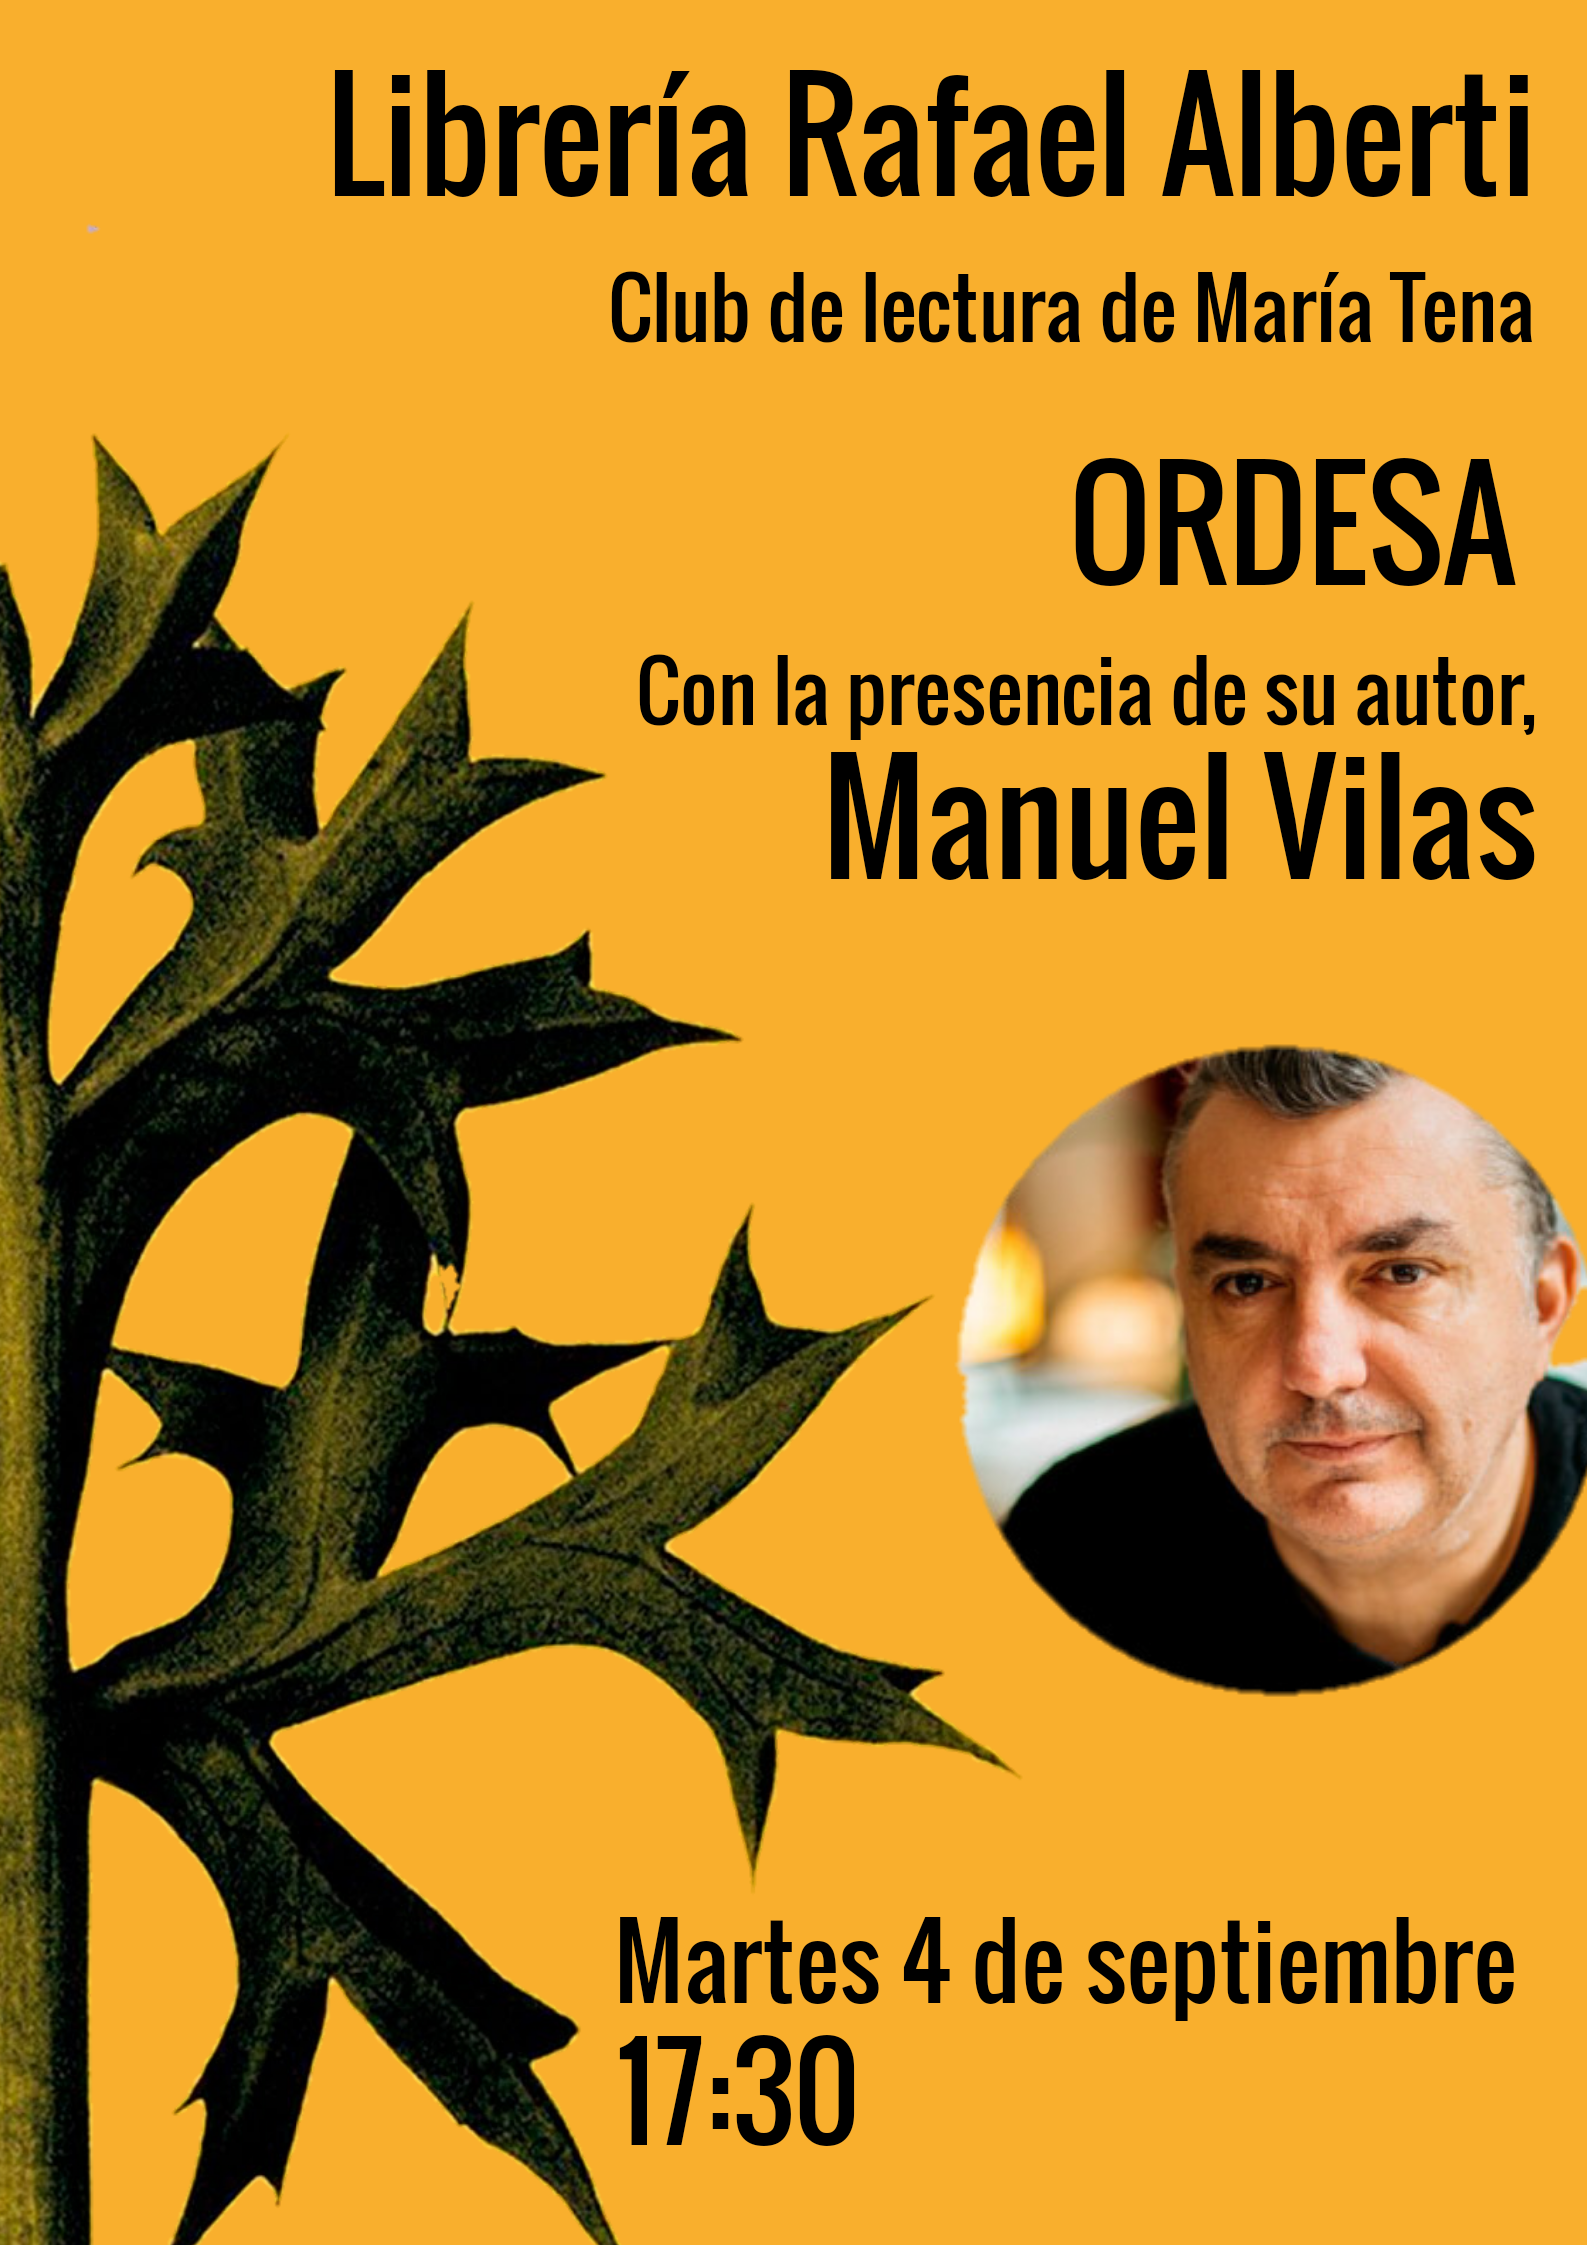 Club de lectura con María Tena. Ordesa, de Manuel Vilas